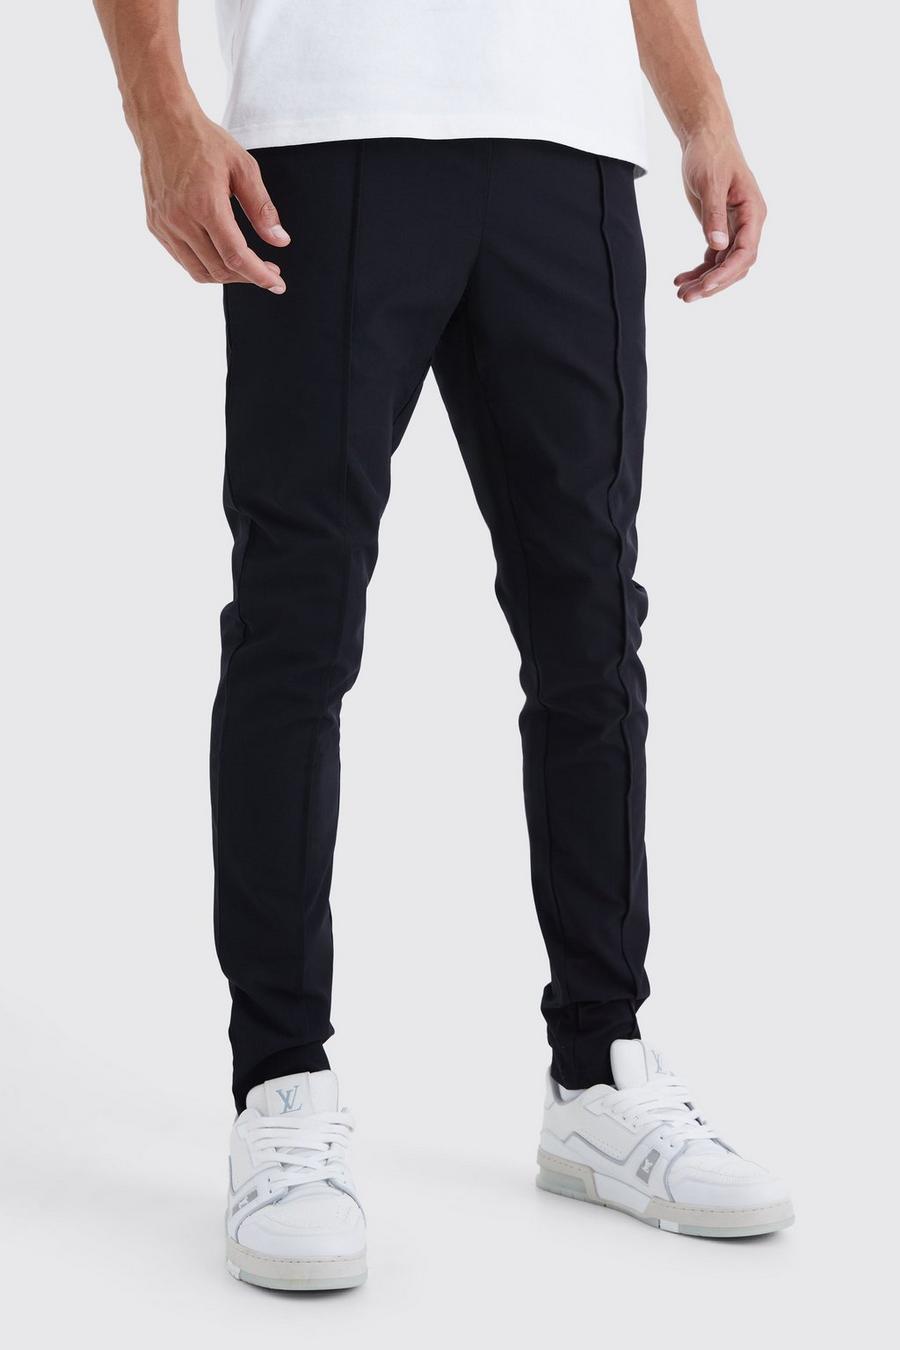 Pantaloni Tall in Stretch leggero elasticizzato con nervature, Black nero